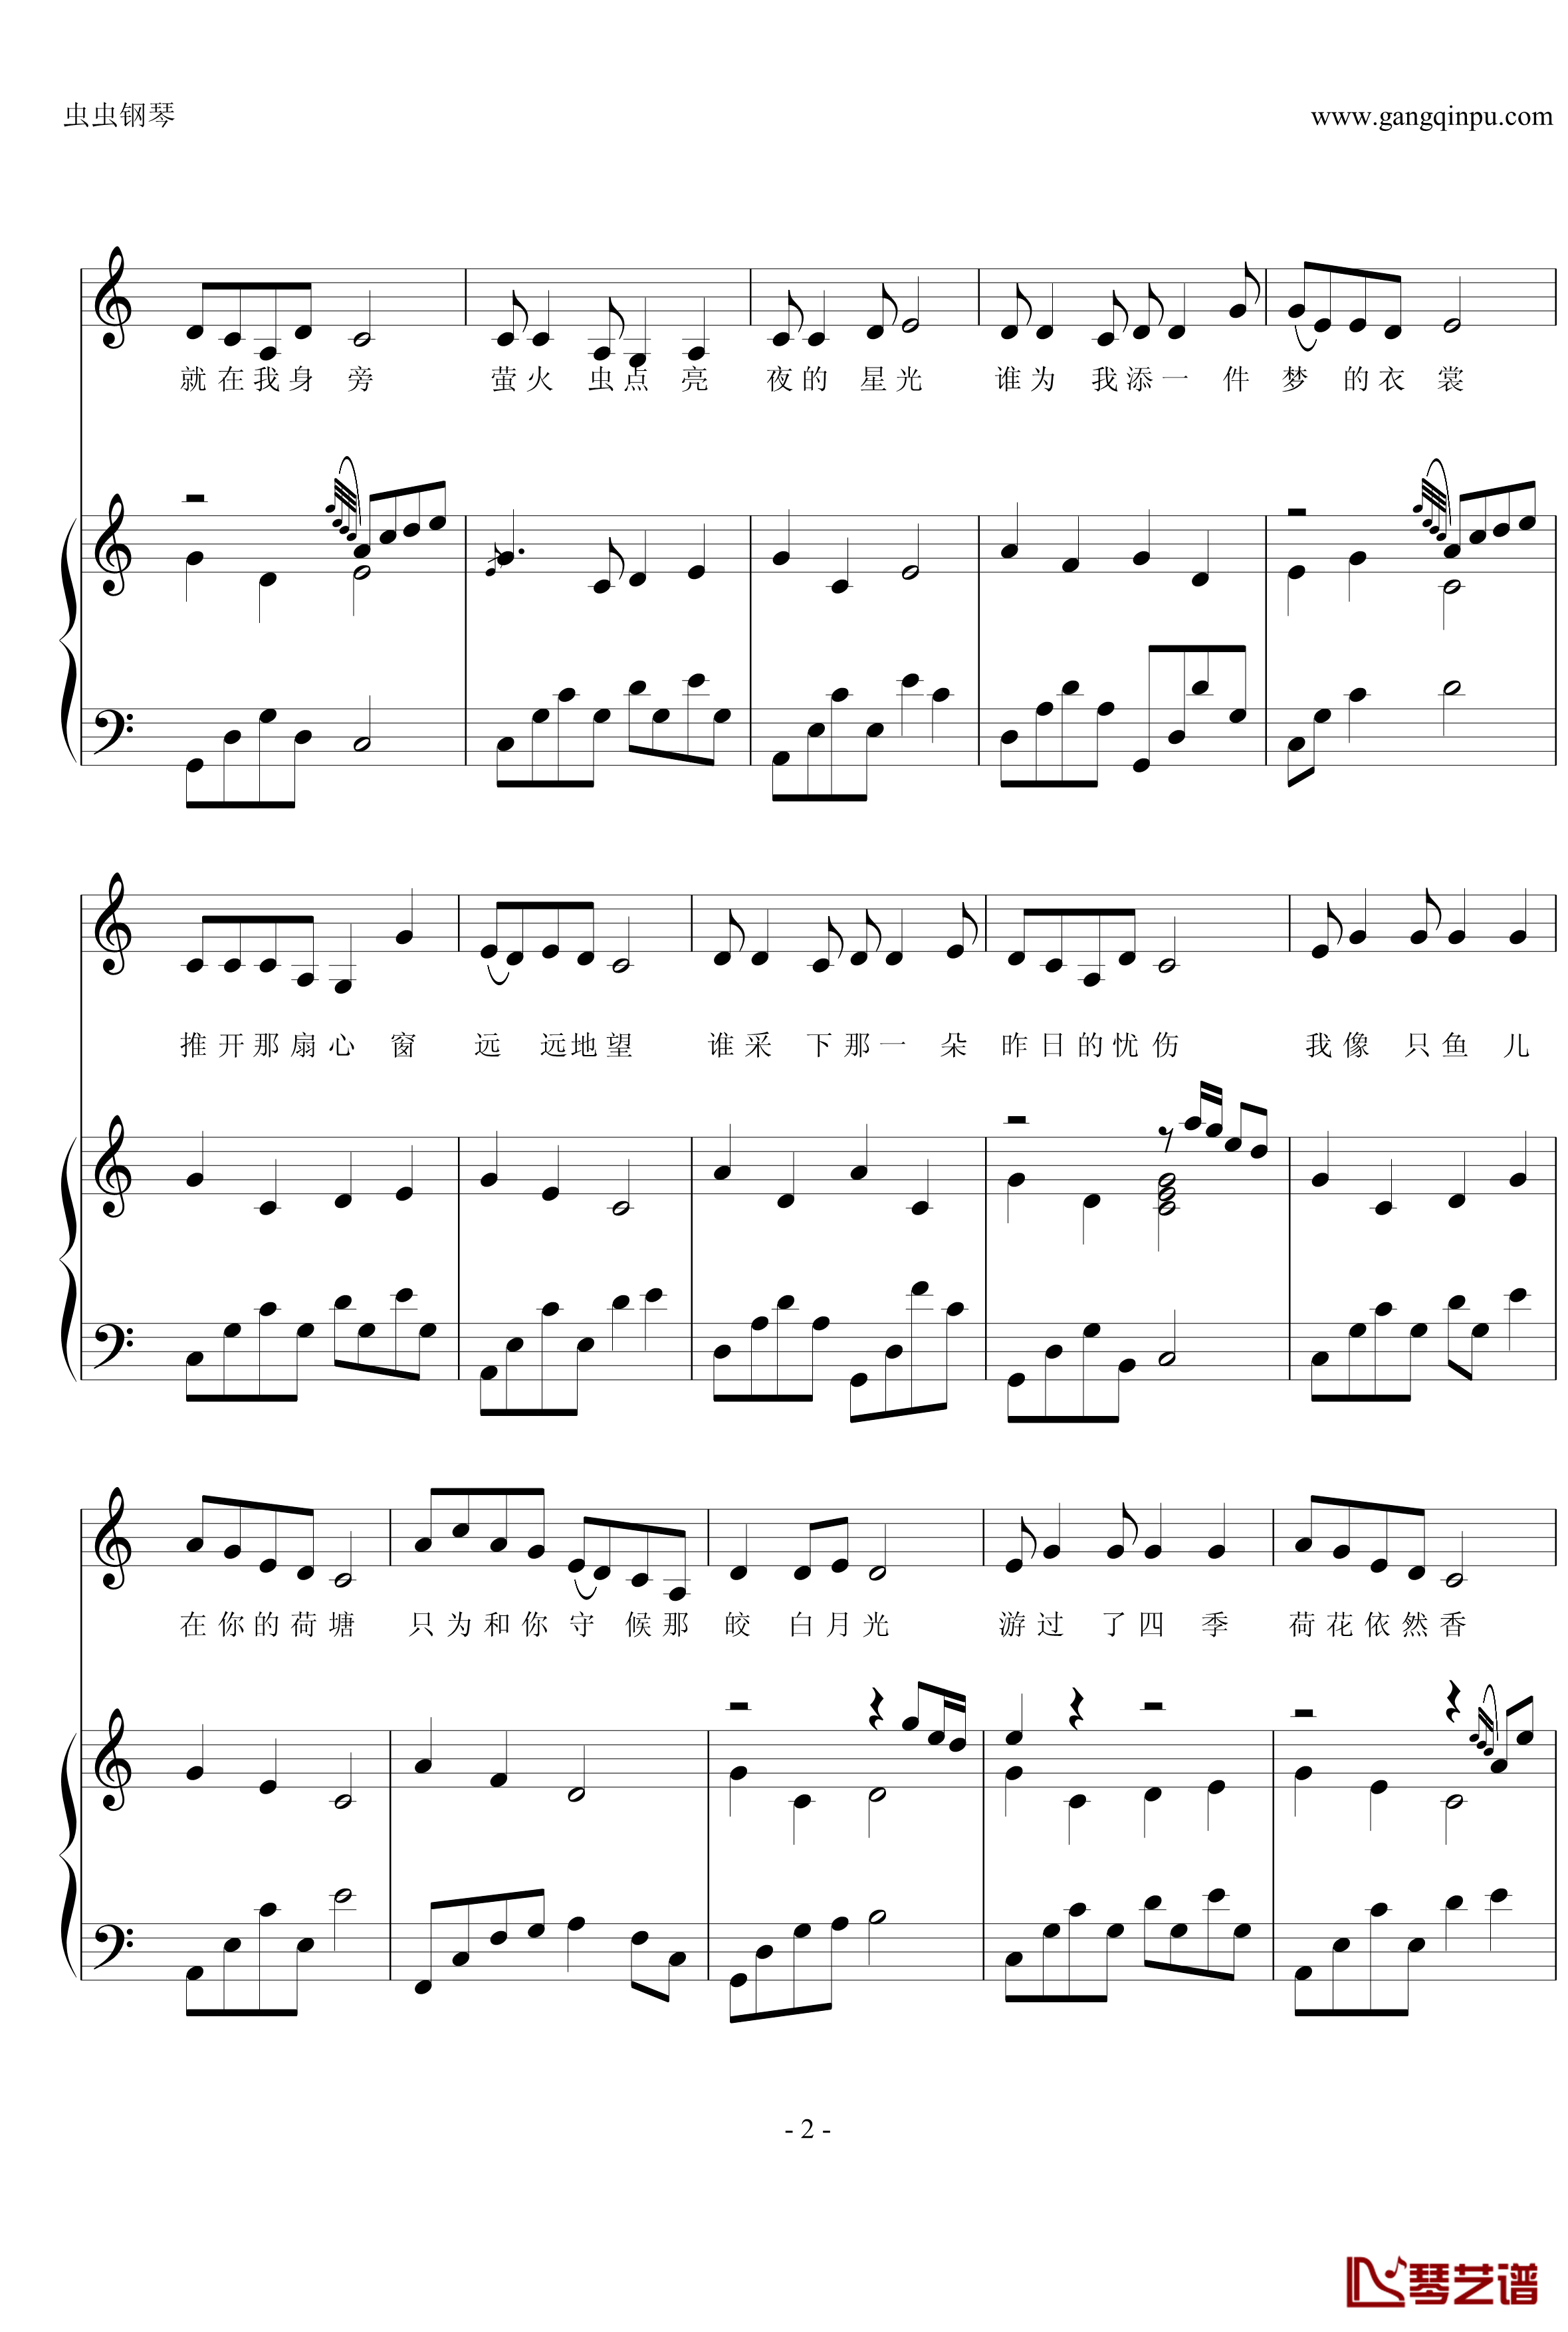 荷塘月色钢琴谱-钢伴弹唱-带歌词-凤凰传奇2